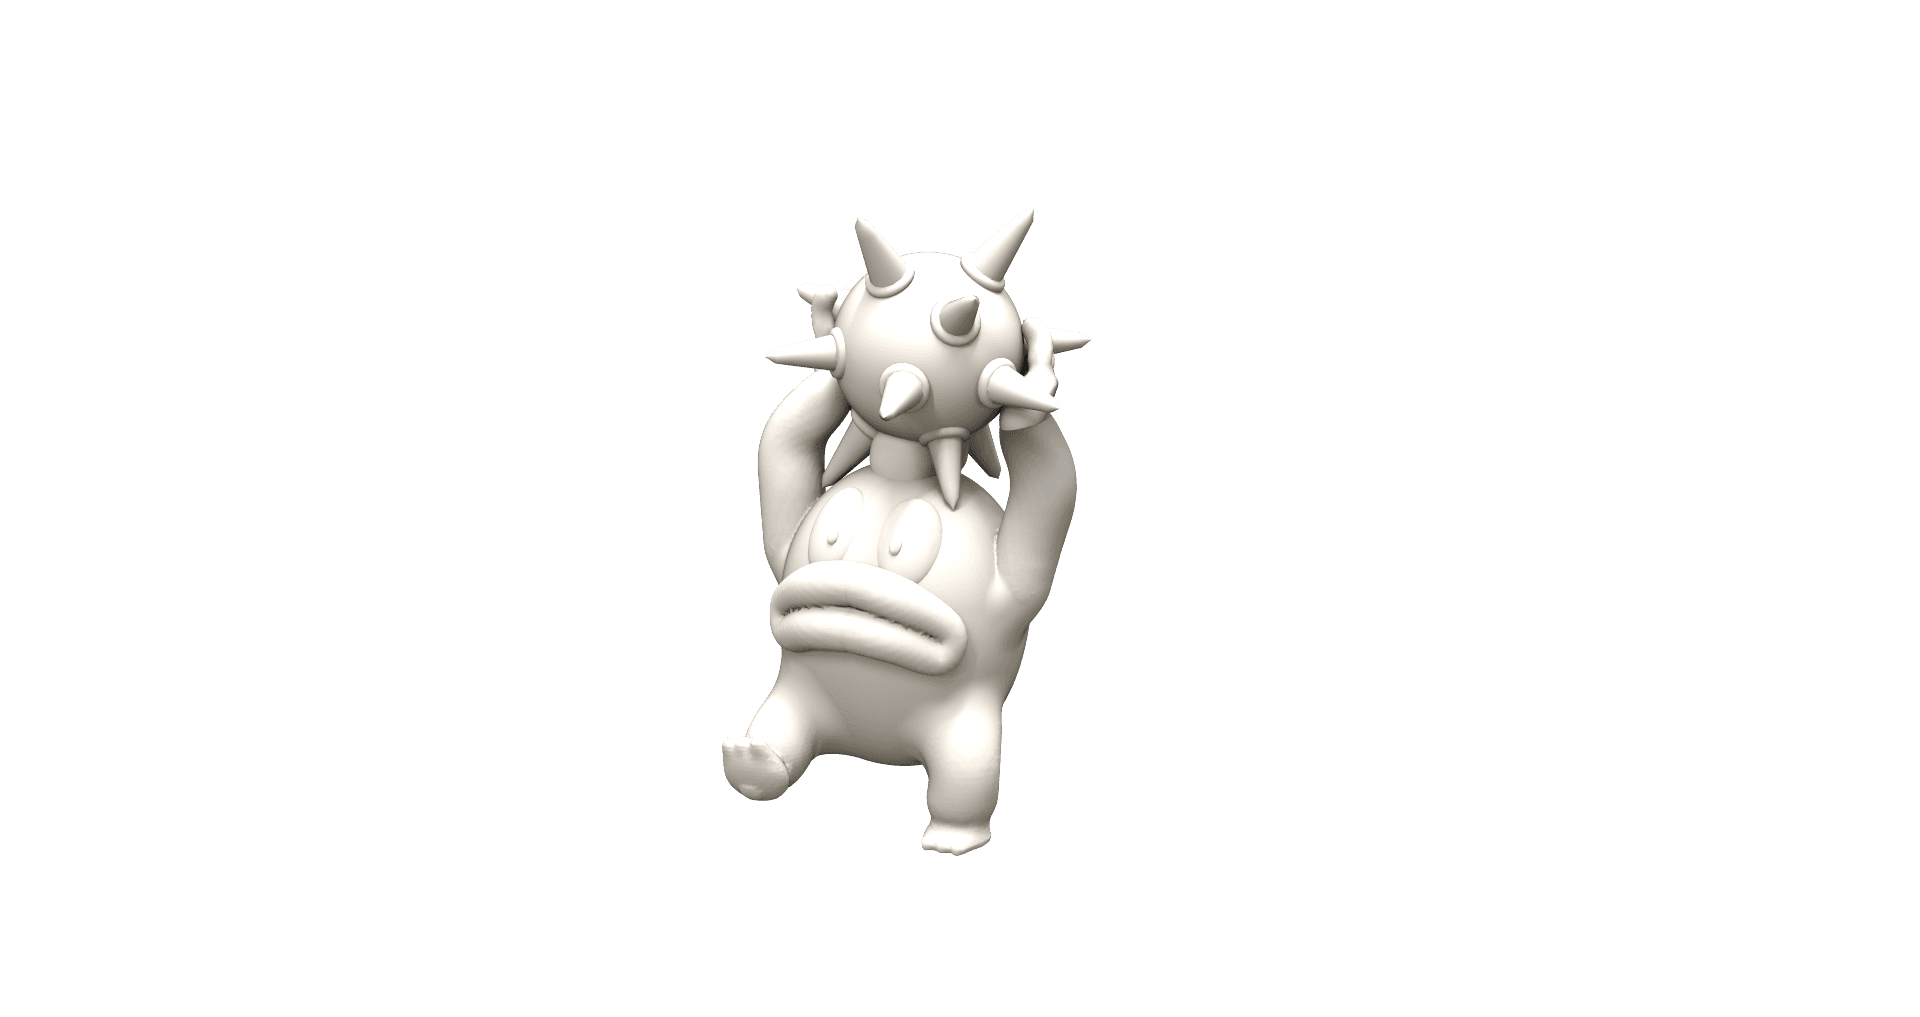 Spike with a spiney - Mario fan art 3d model